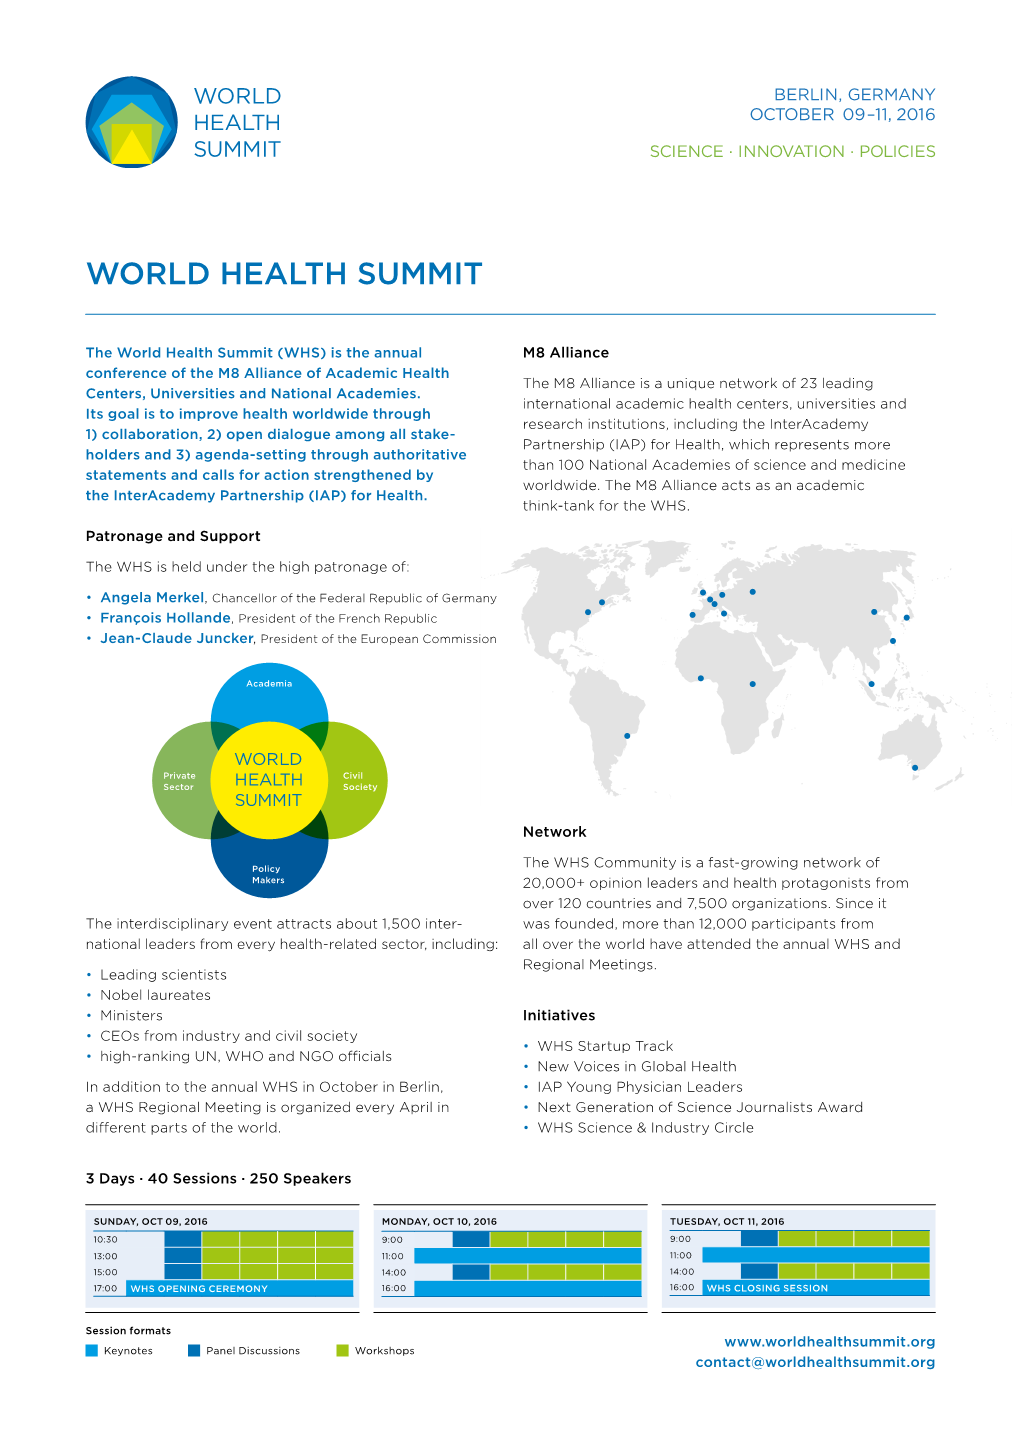 World Health Summit